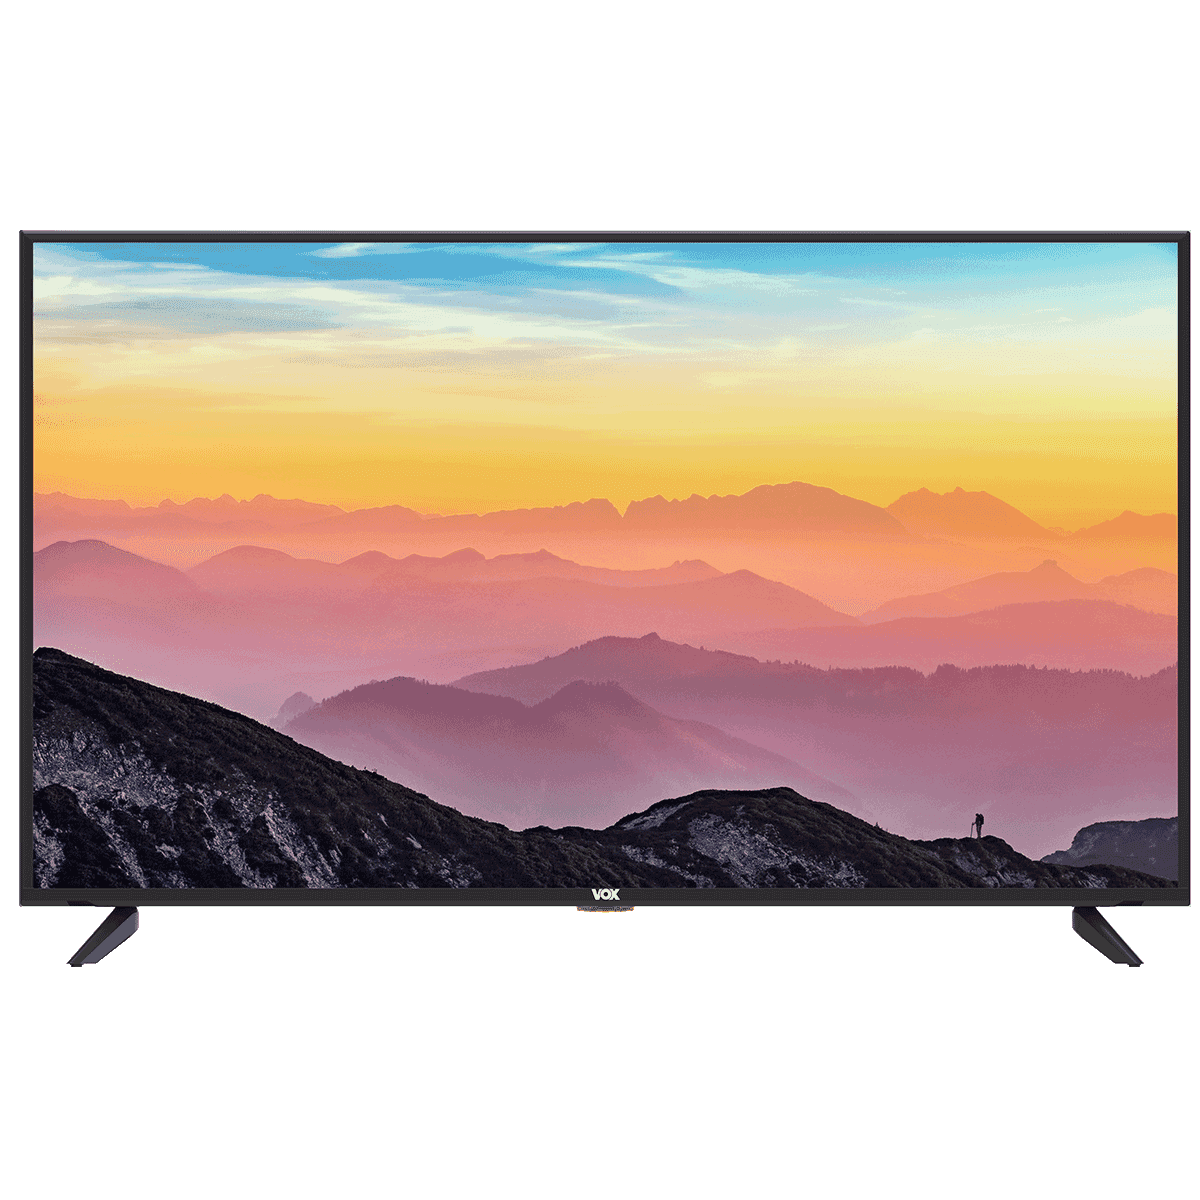 VOX 50A11U672B Smart televizor, 50" 4K, Ultra HD, DLED